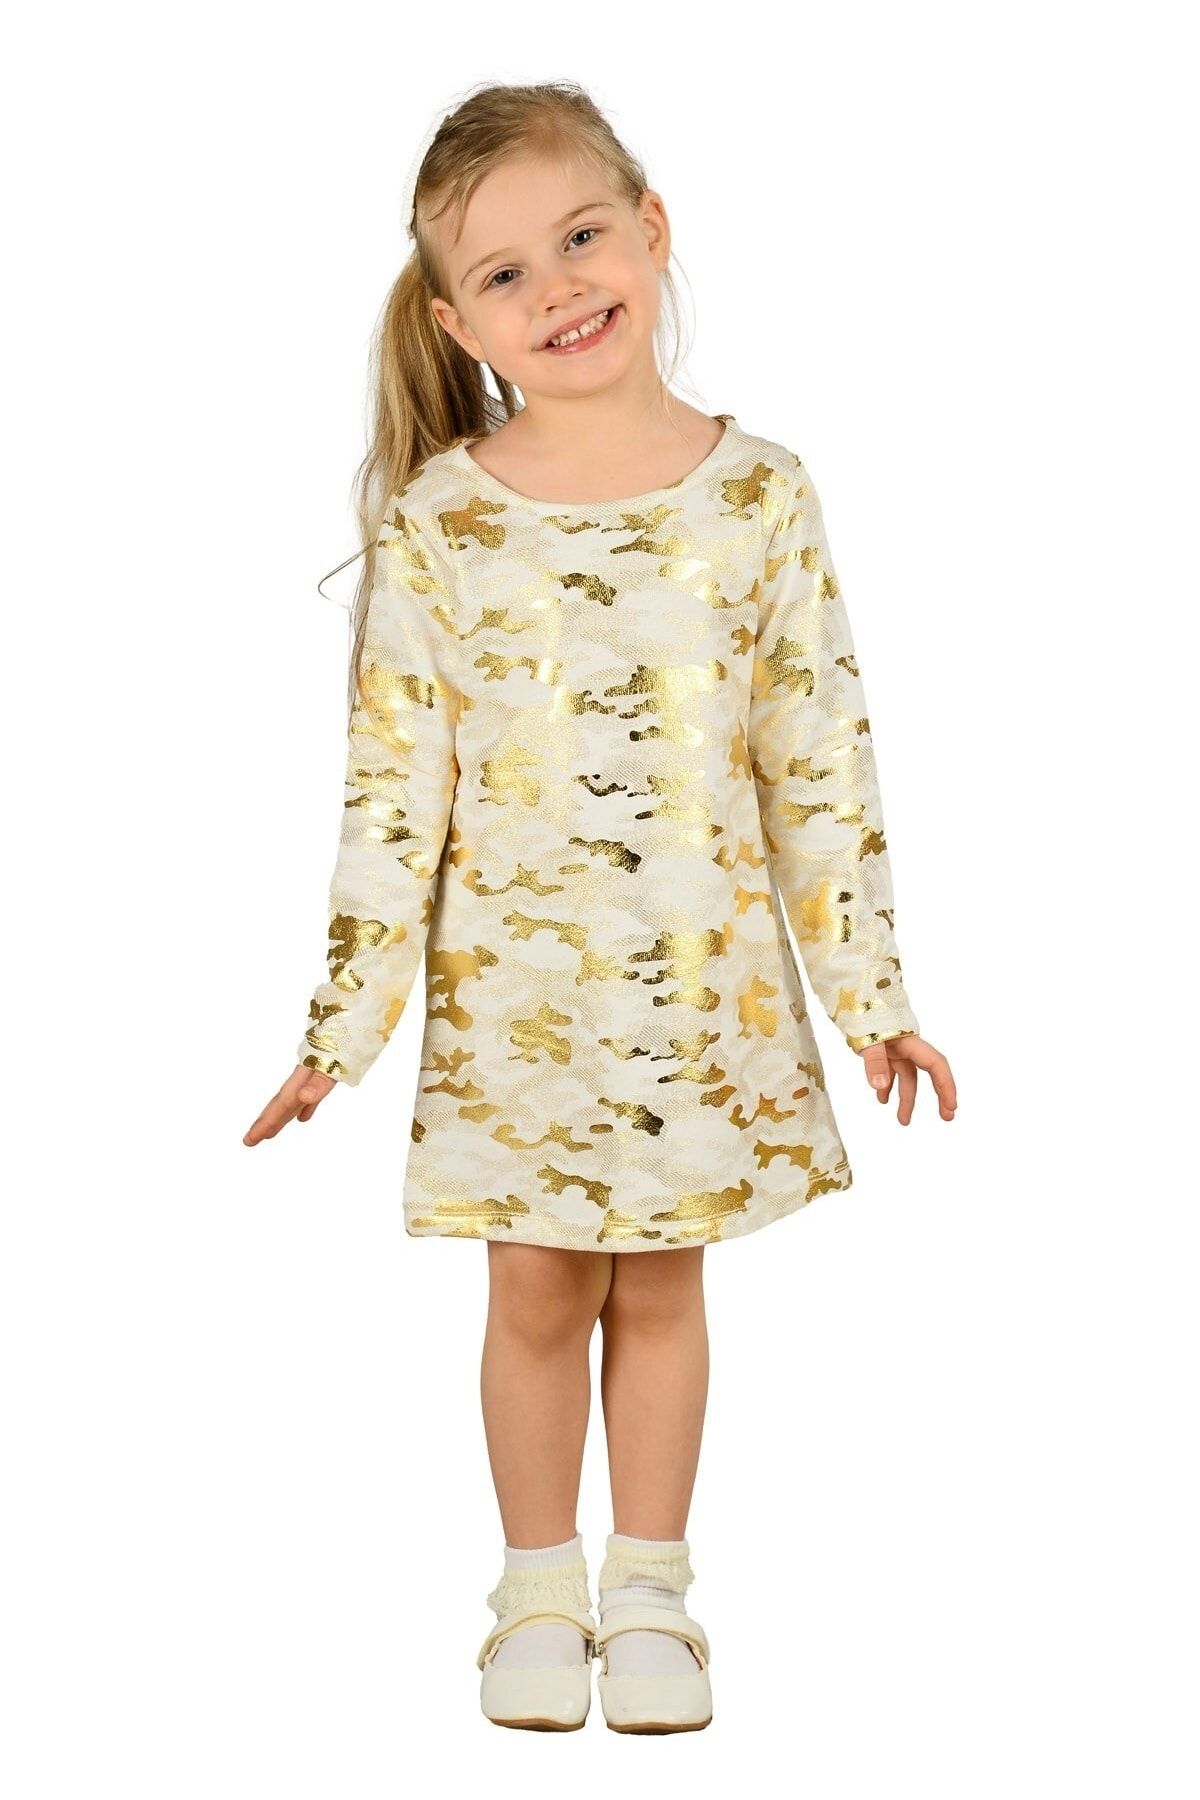 Silversun Sarı Renkli Kız Çocuk Örme Elbise-ek 218698 |silversun